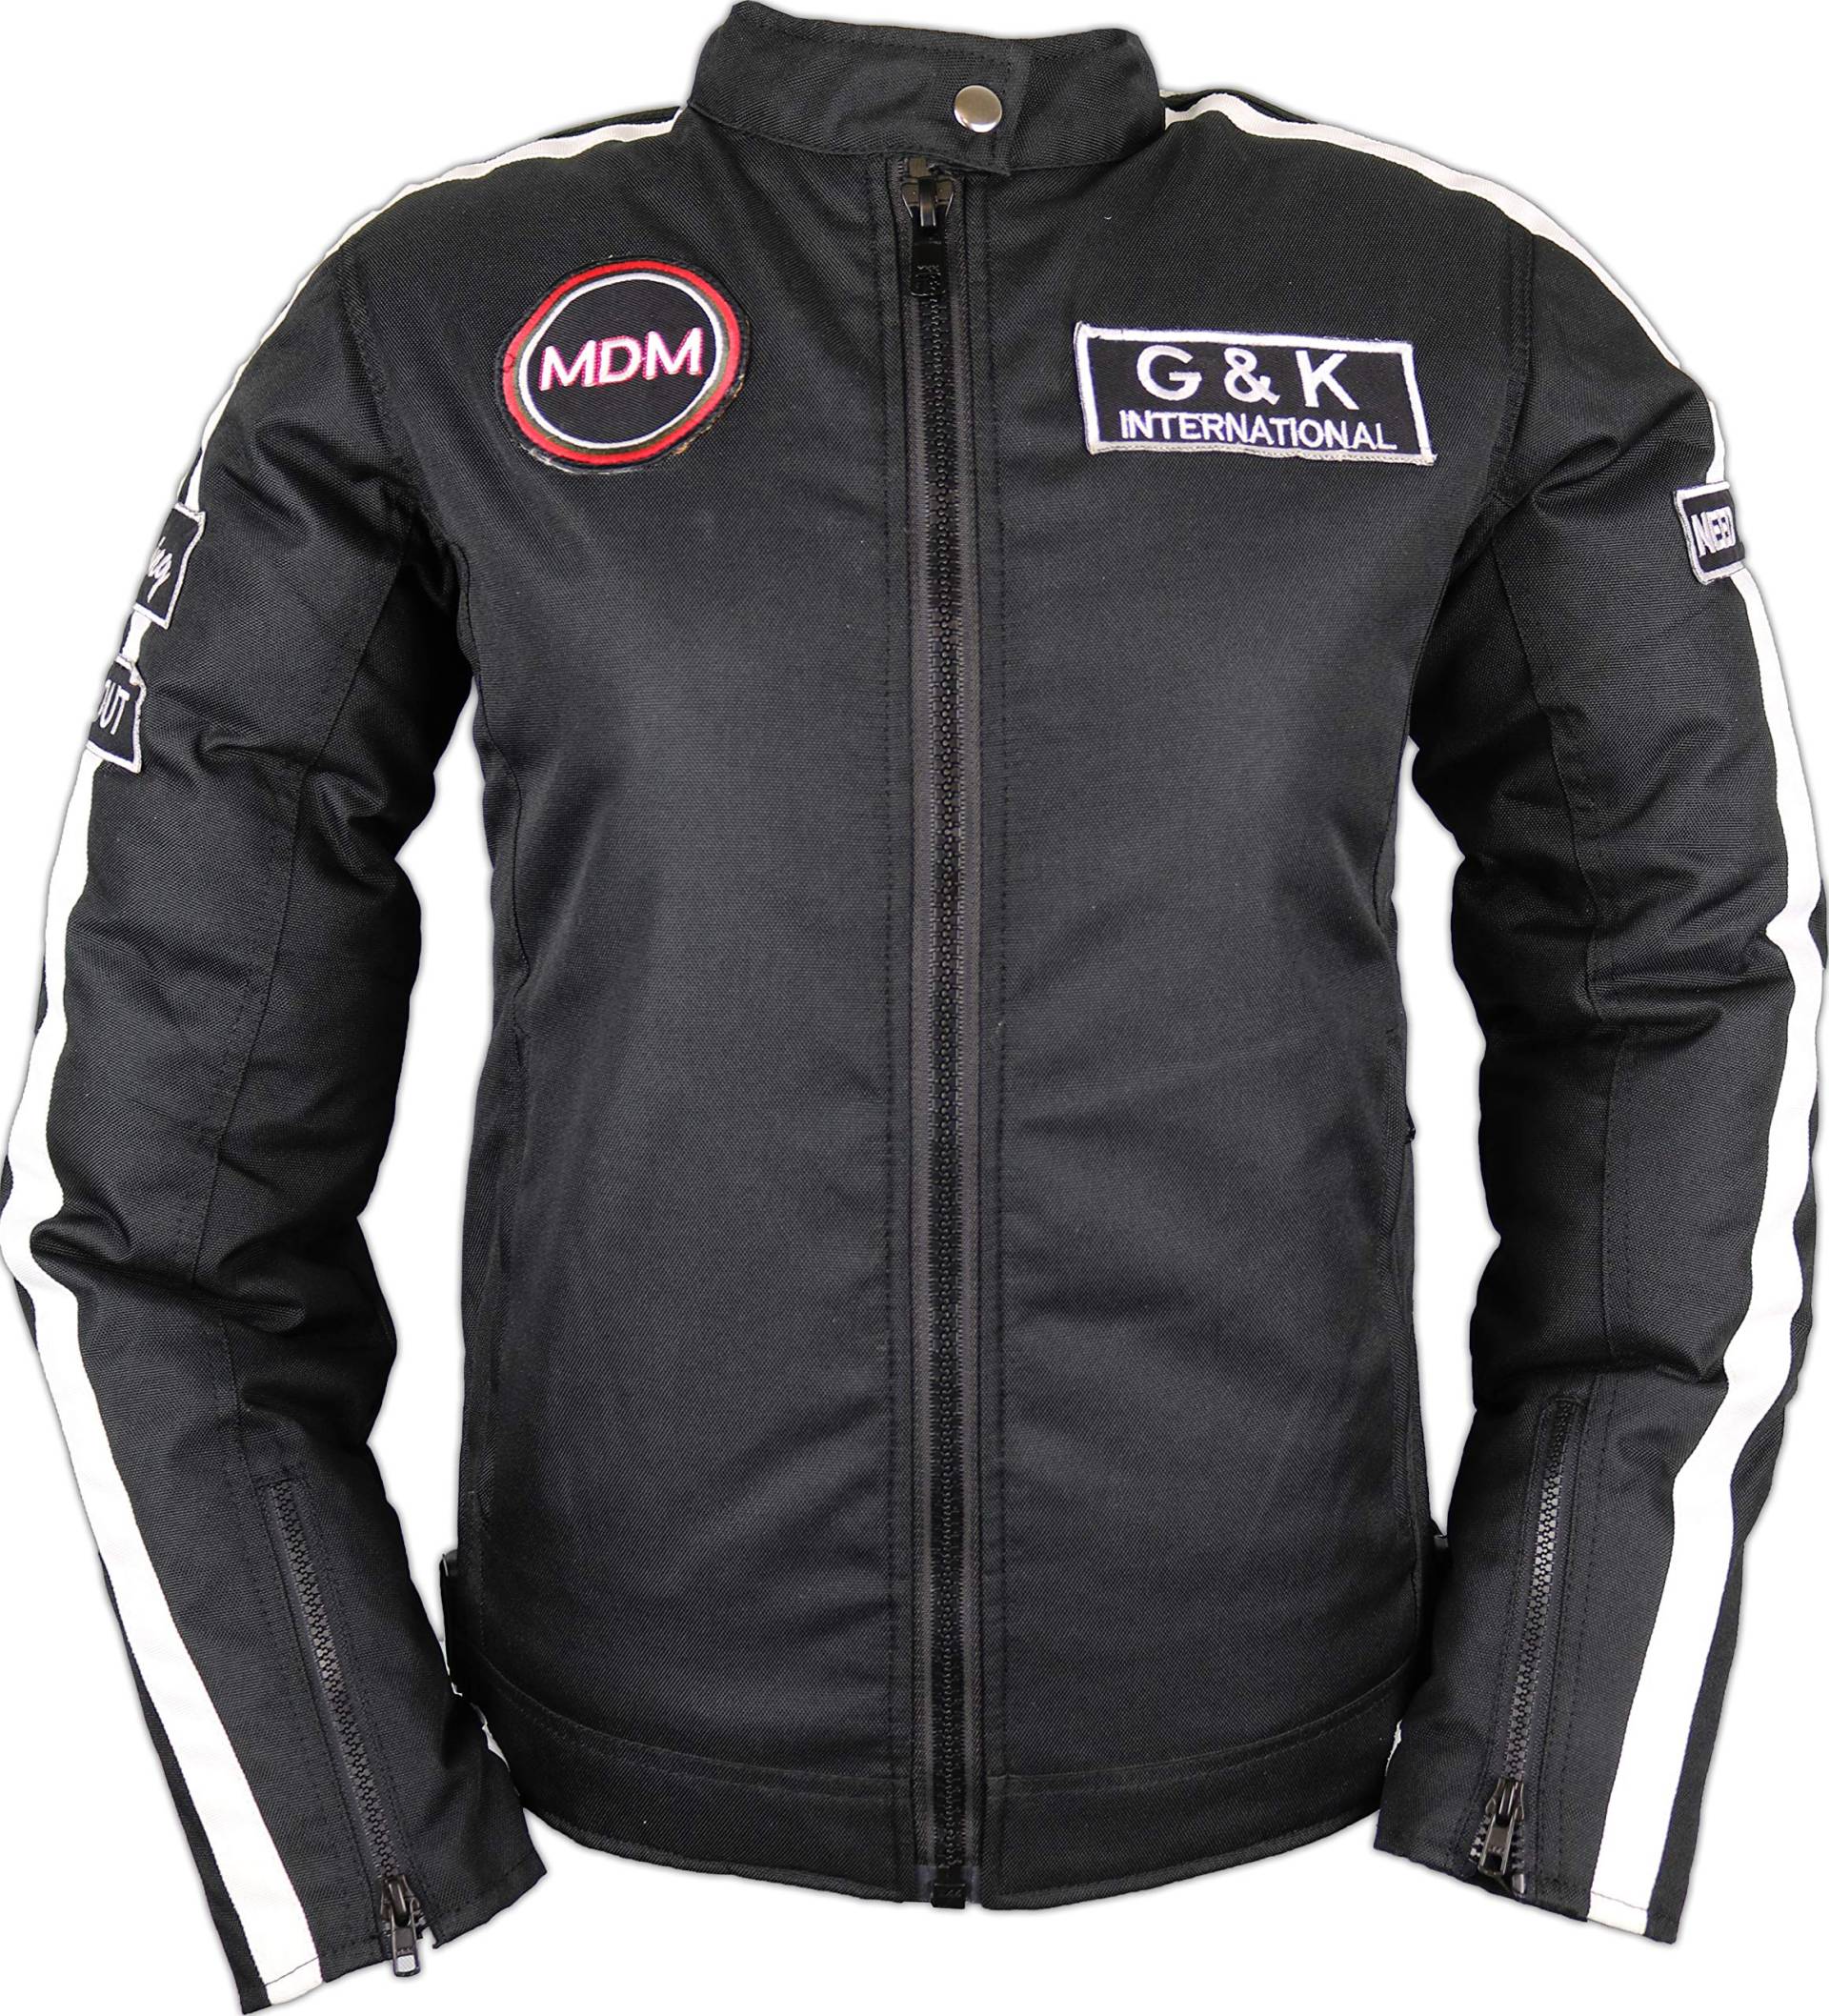 MDM Damen Motorrad Textil Jacke in schwarz mit weißen streifen von MDM